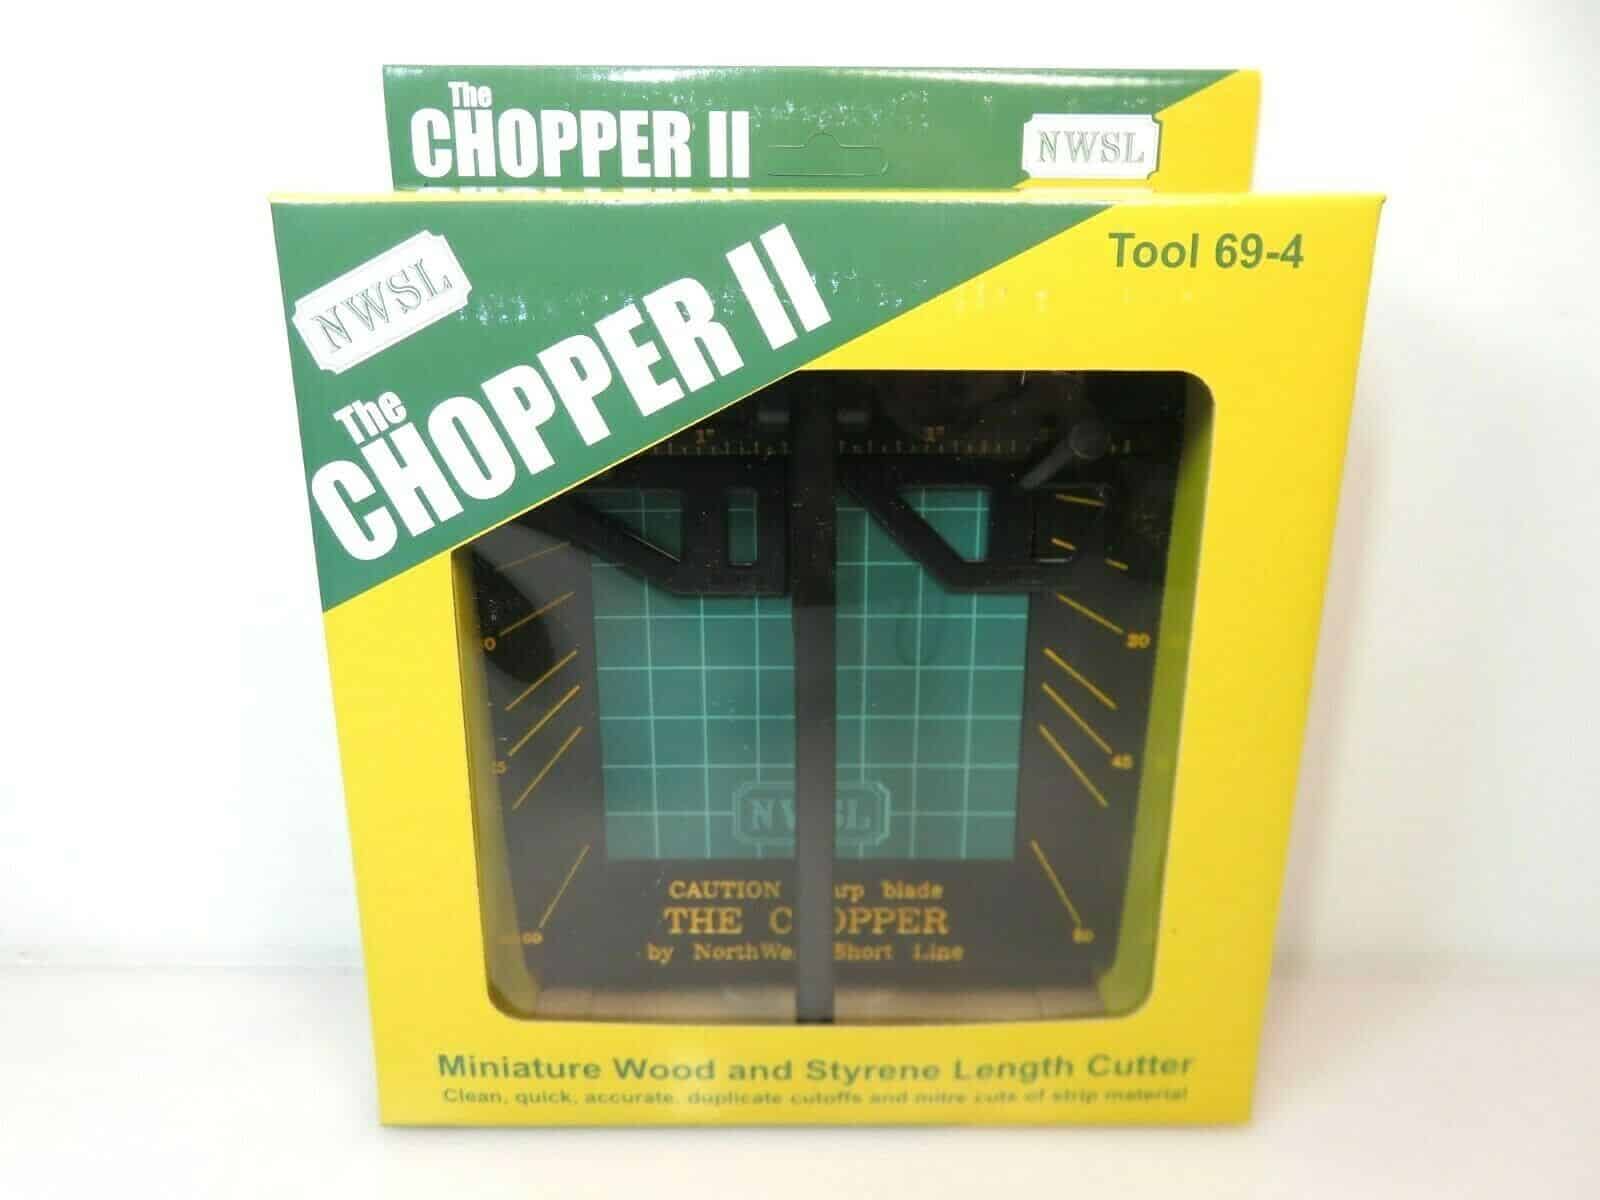 The Chopper III